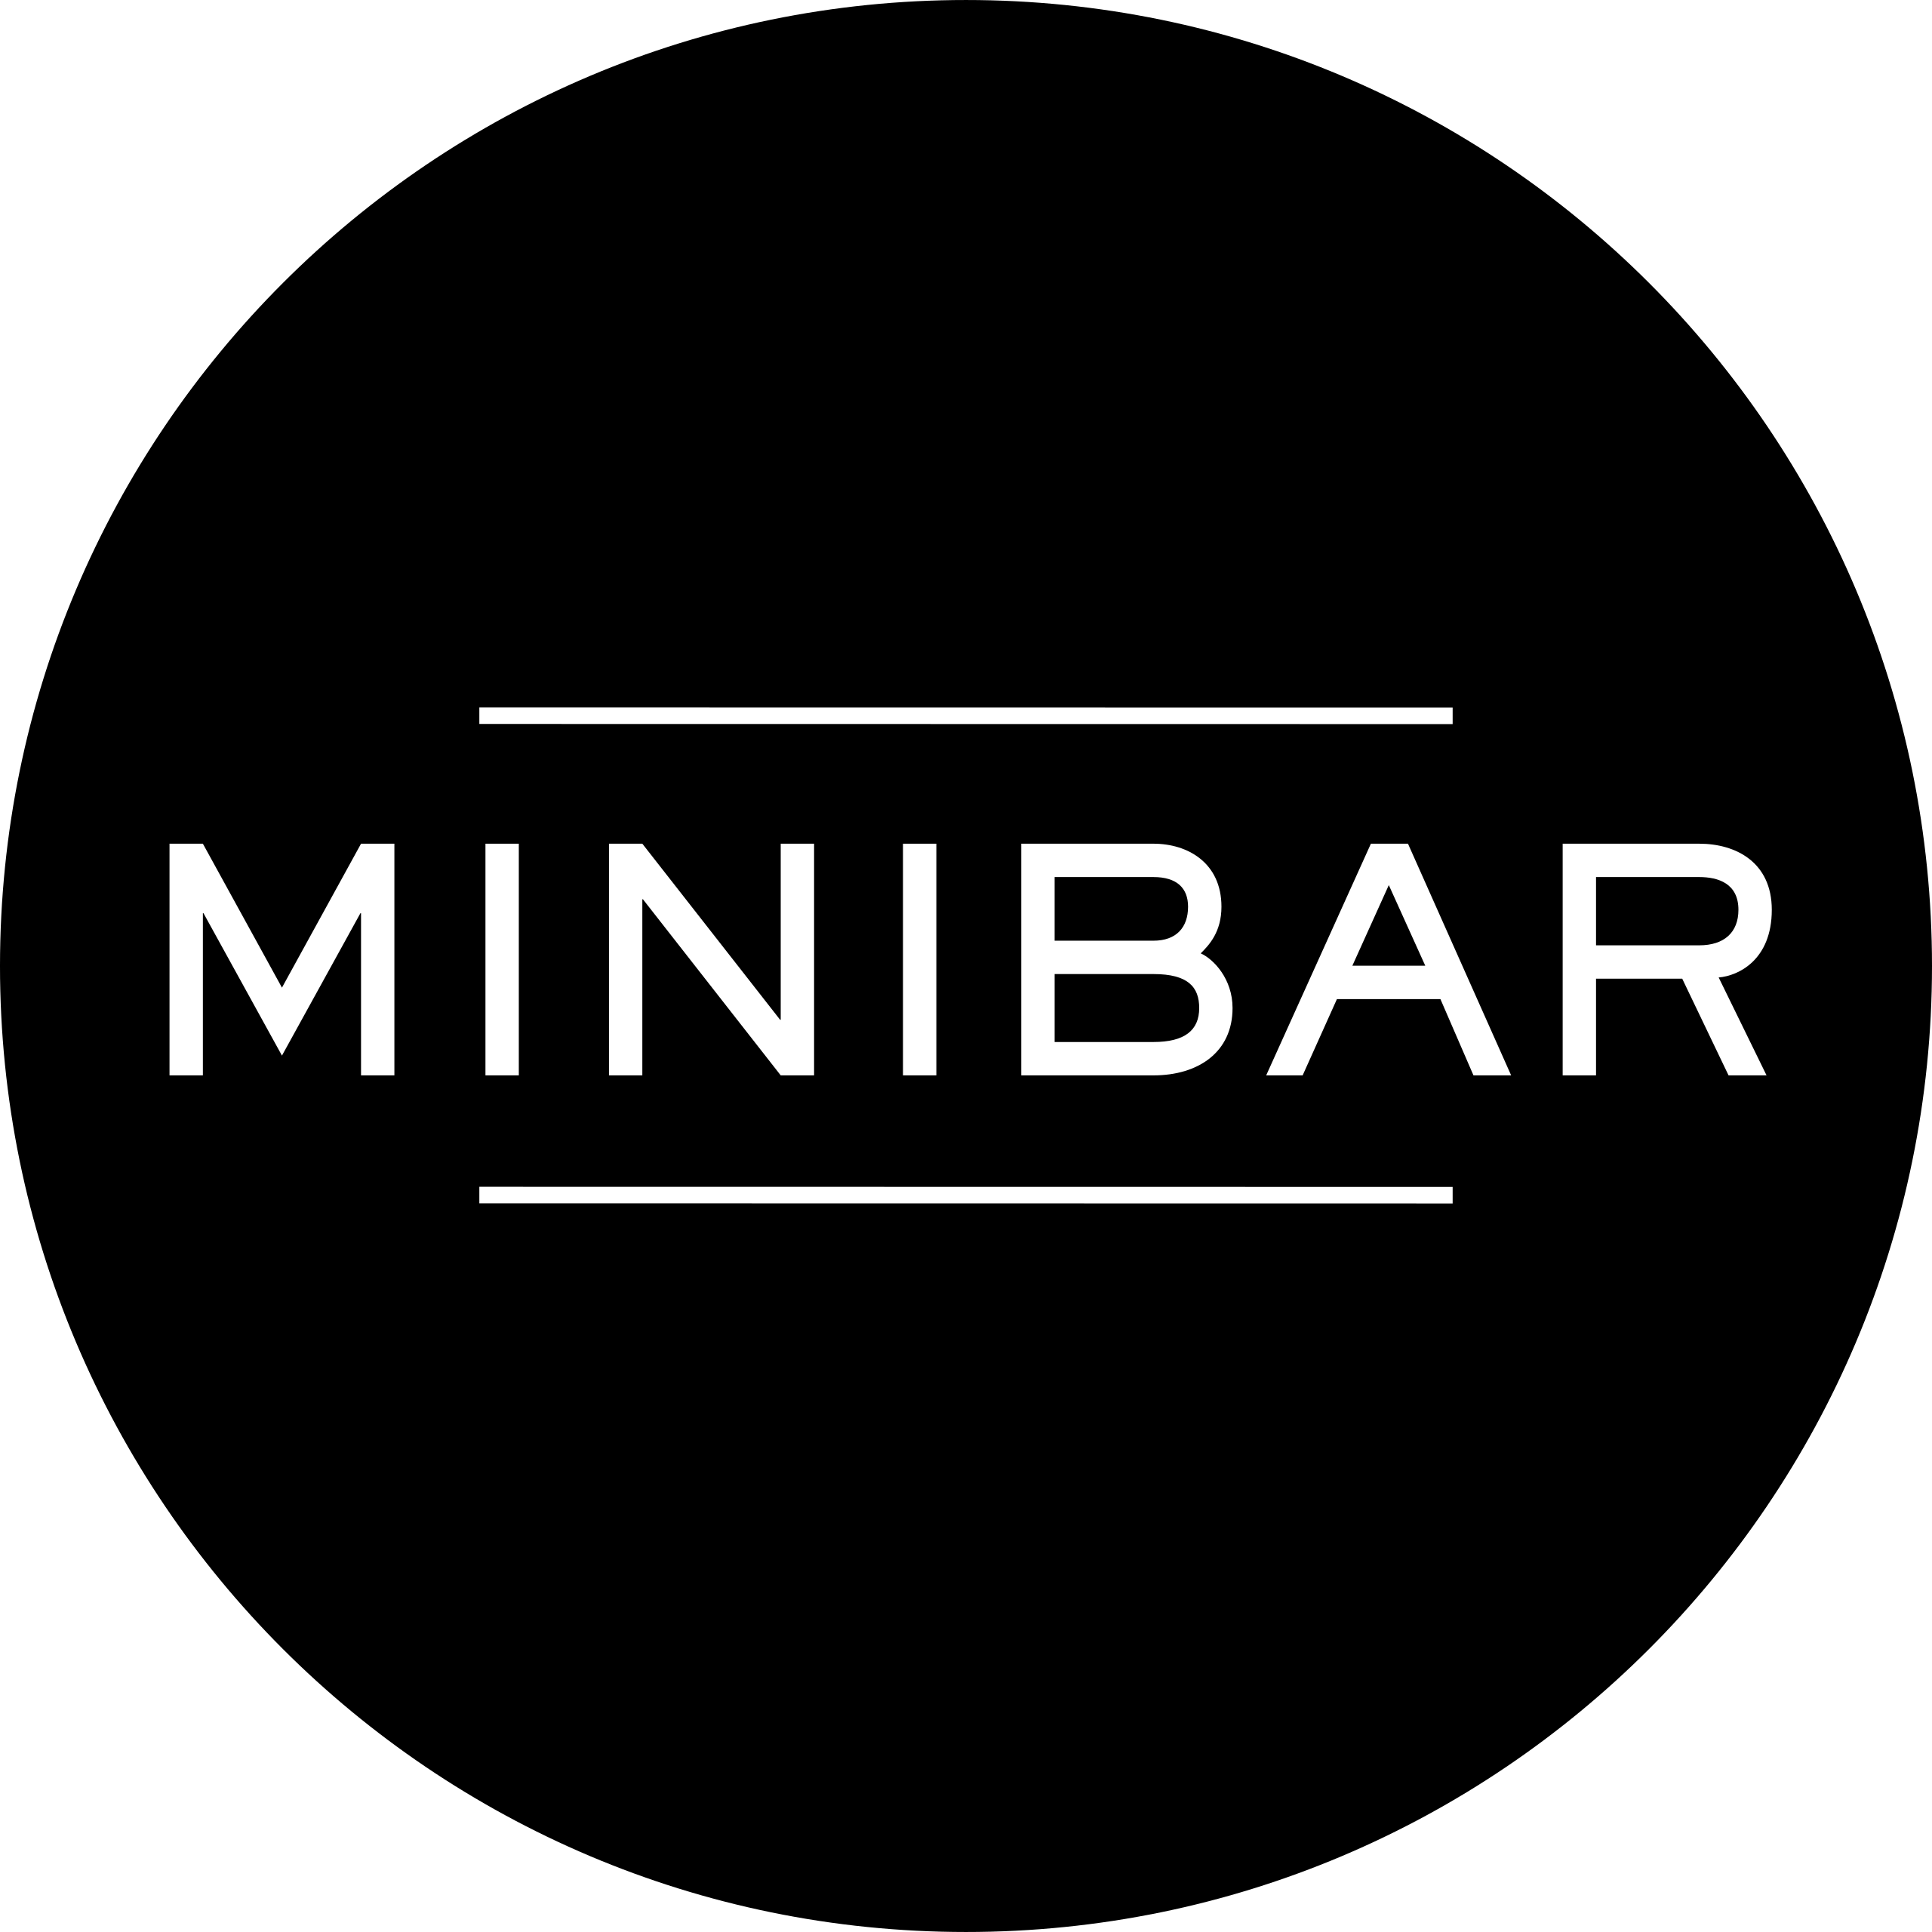 Buy Sixpoint From Minibar